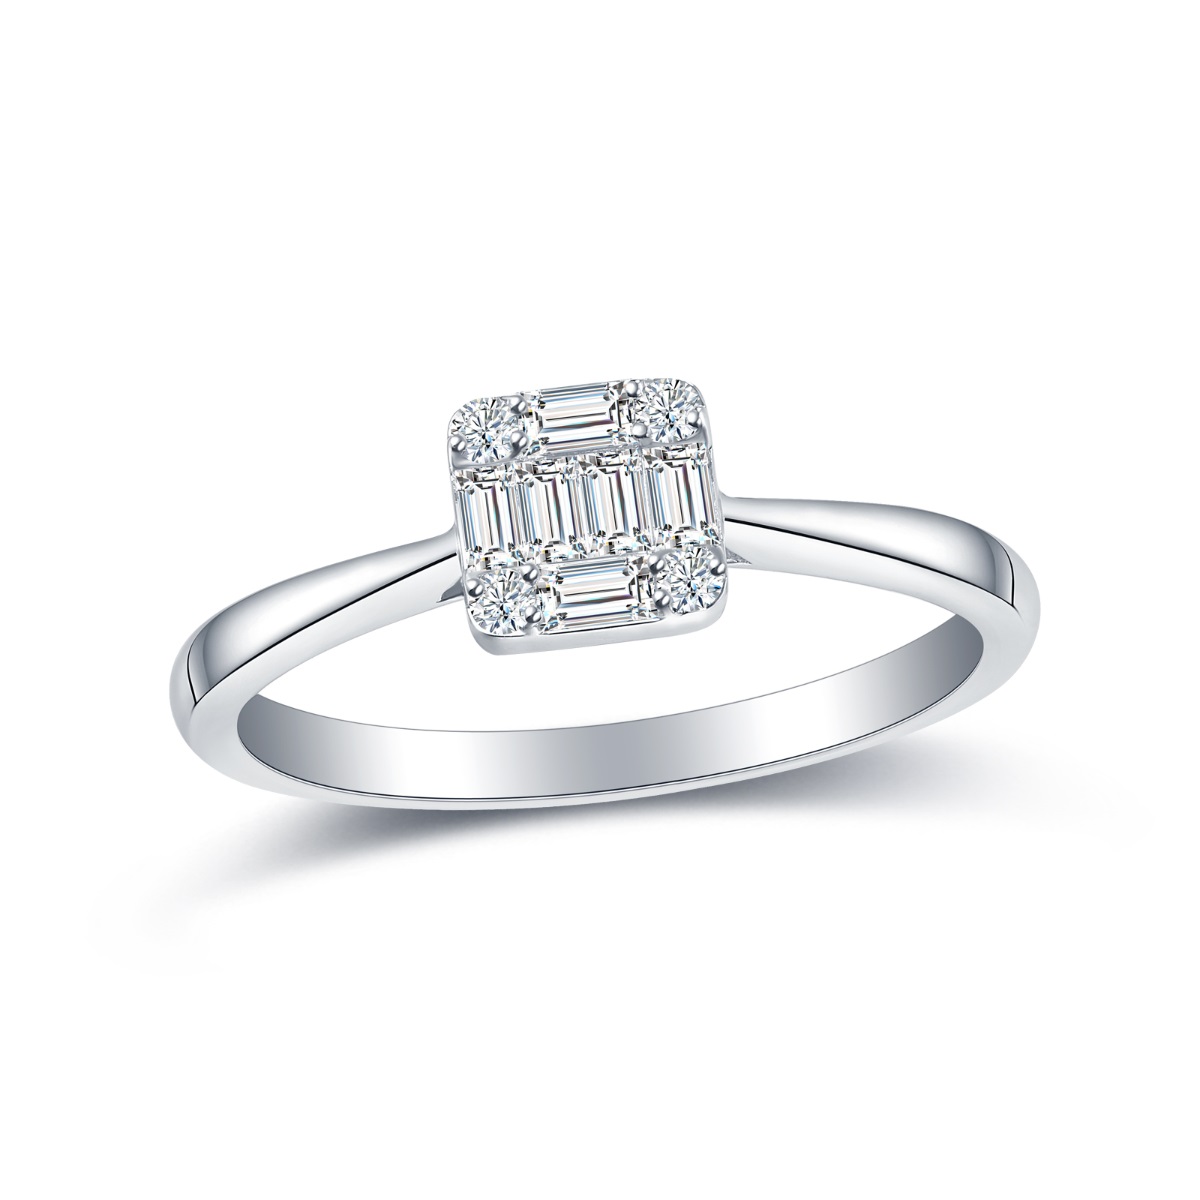 R35129WHT – 18K White Gold Diamond Ring, 0.24 TCW